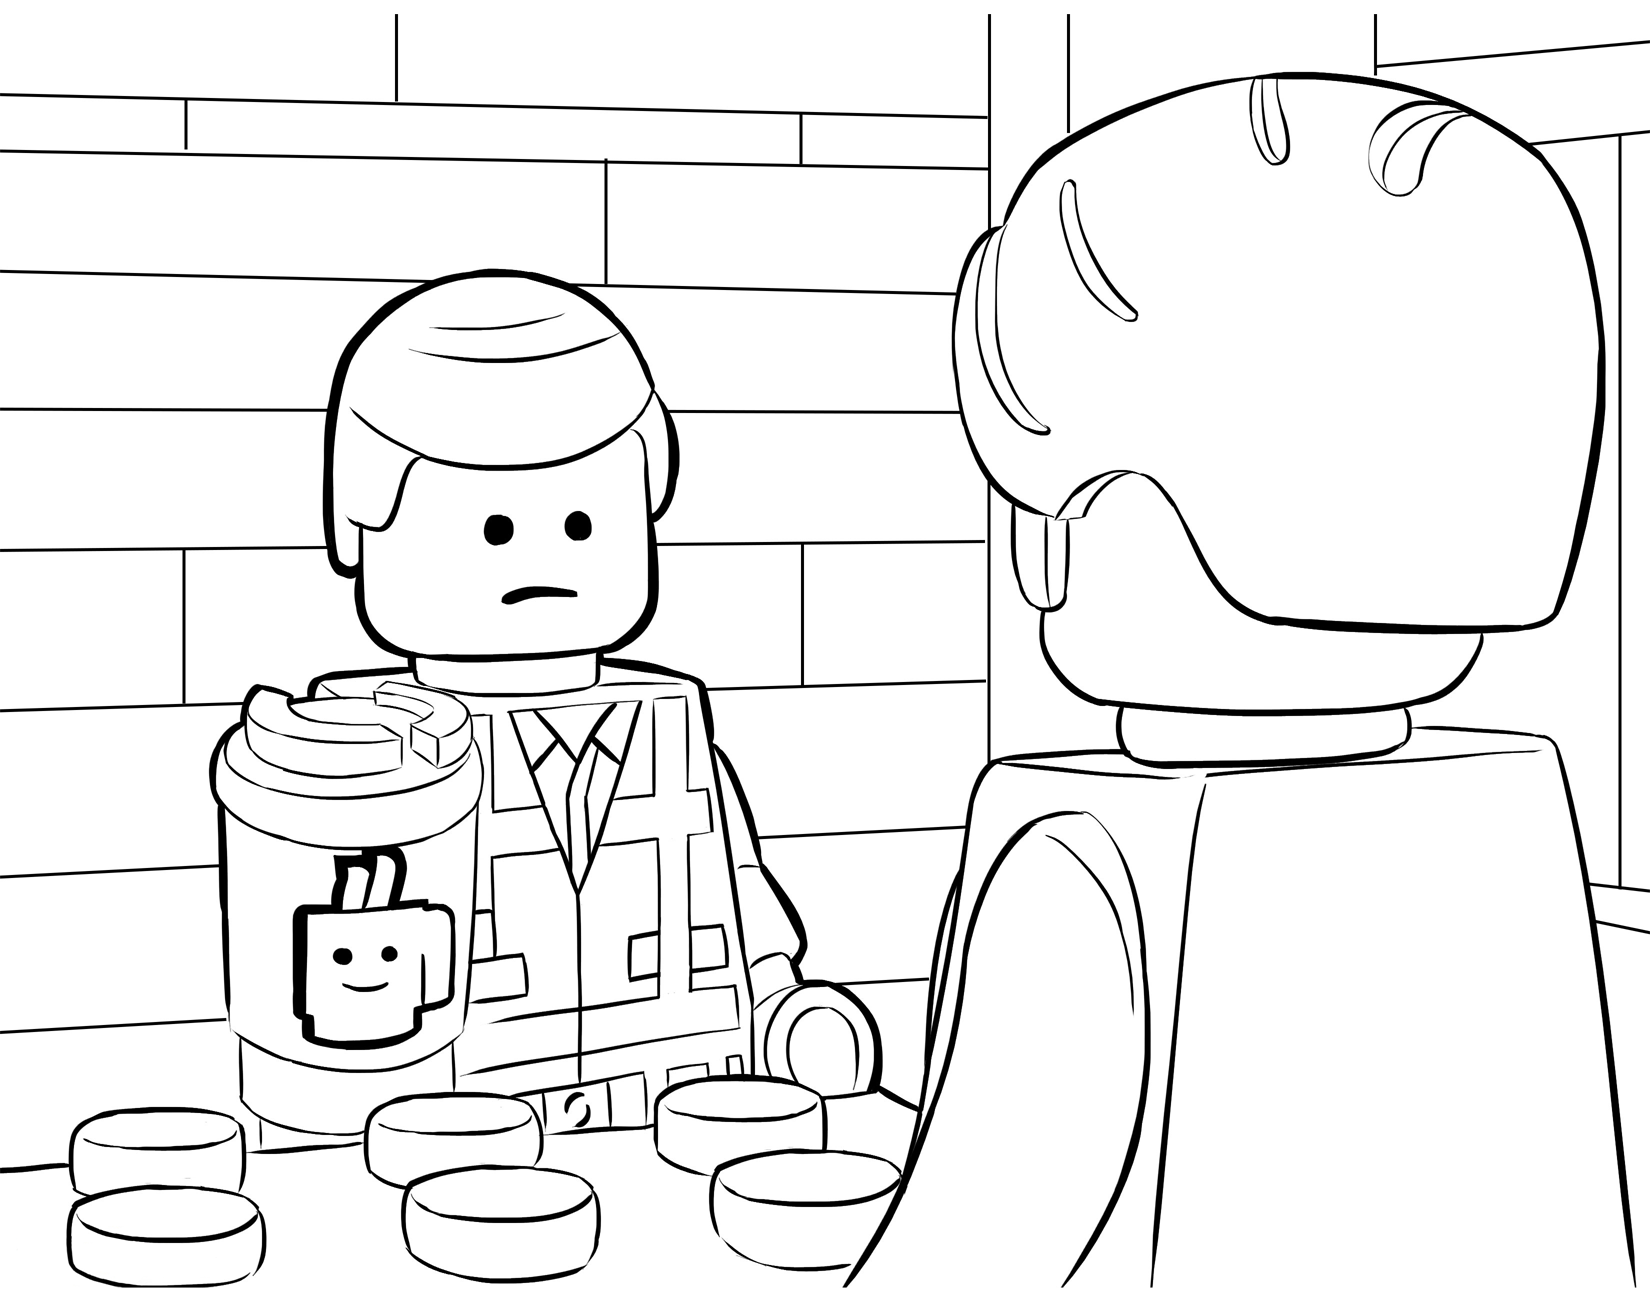 The LEGO Movie - Emmet si guarda allo specchio mentre fa 